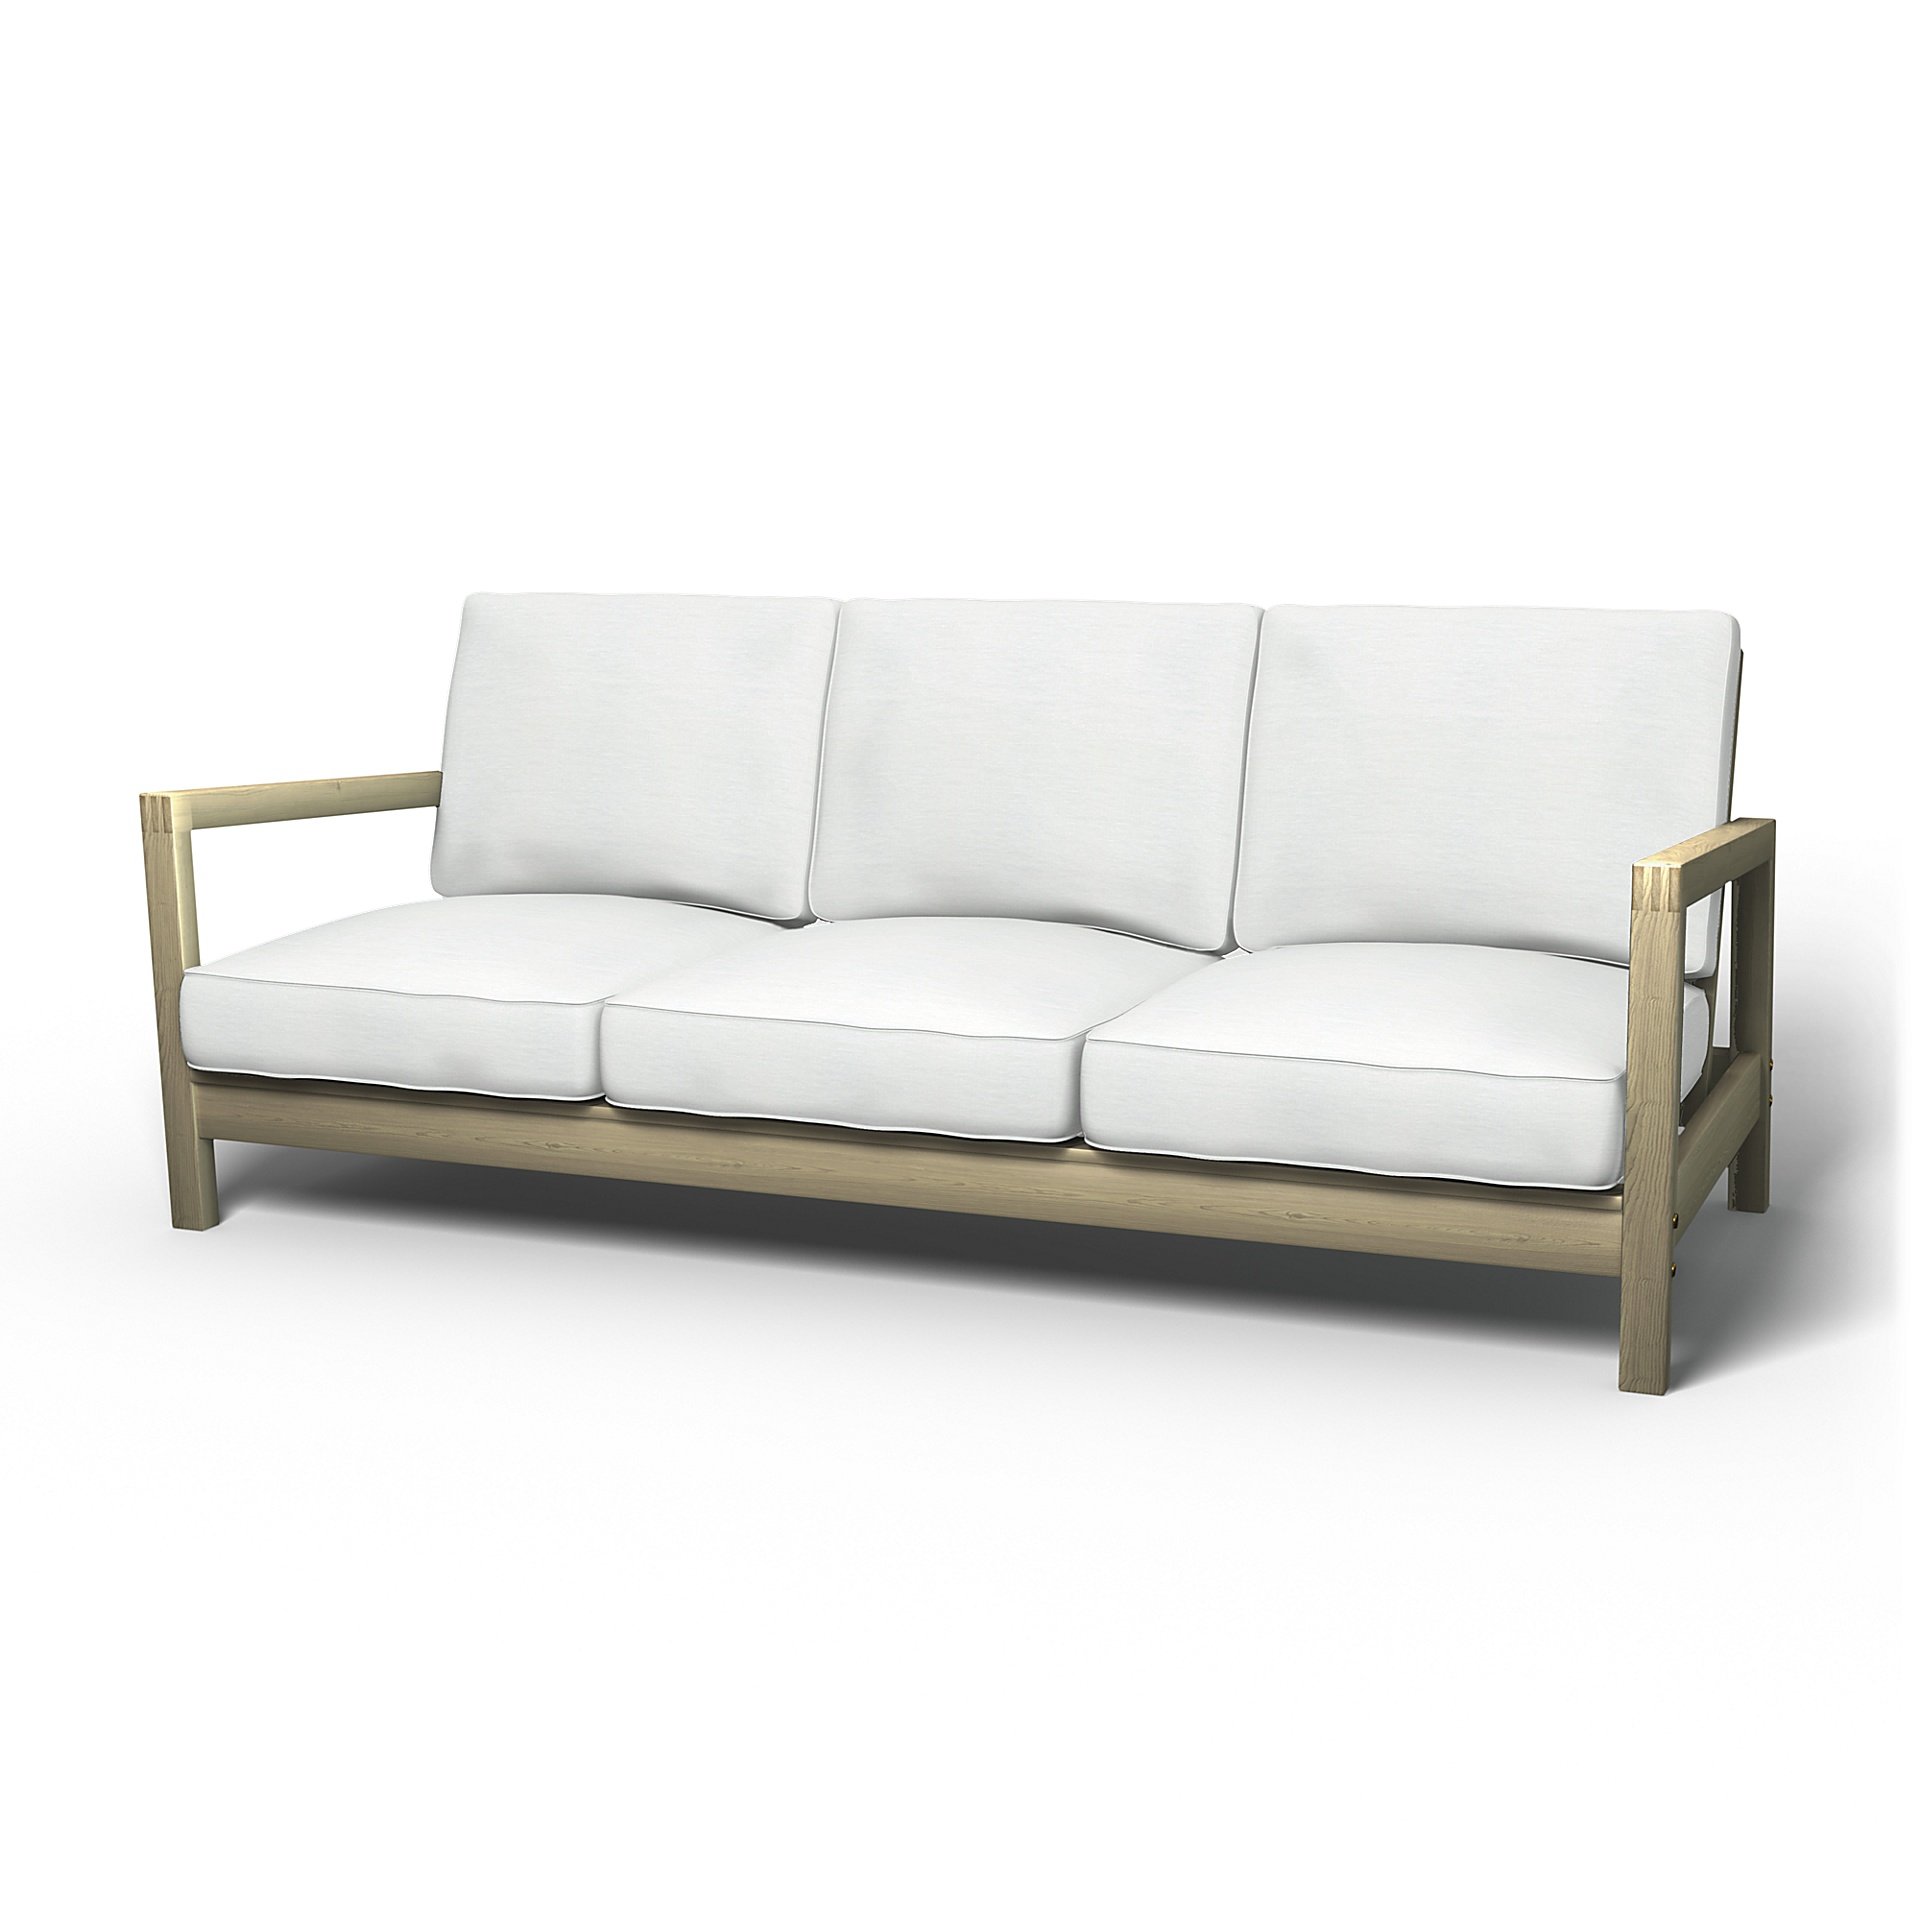 IKEA - Lillberg 3 Seater Sofa Cover, White, Linen - Bemz